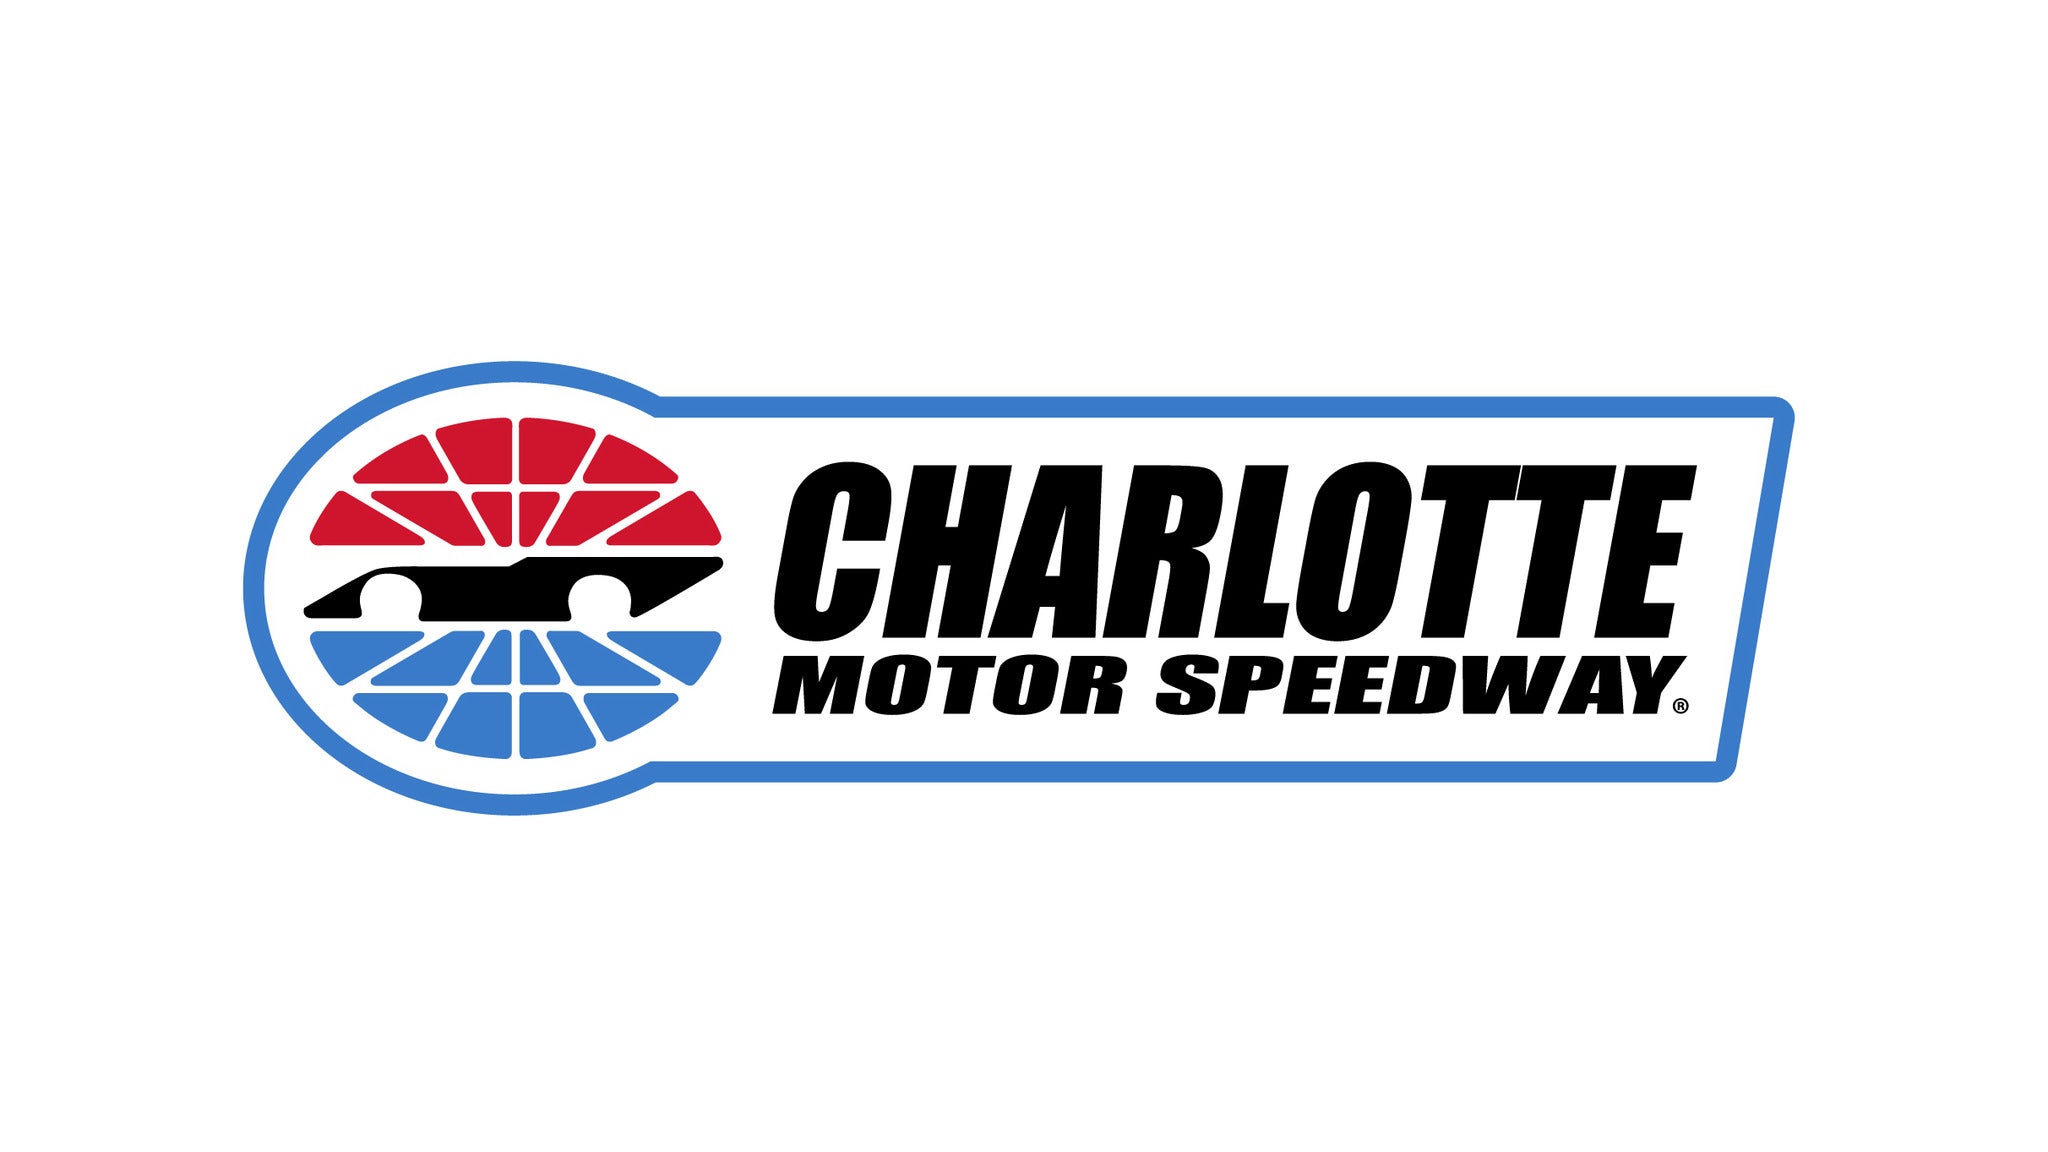 Charlotte Motor Speedway Events presale information on freepresalepasswords.com